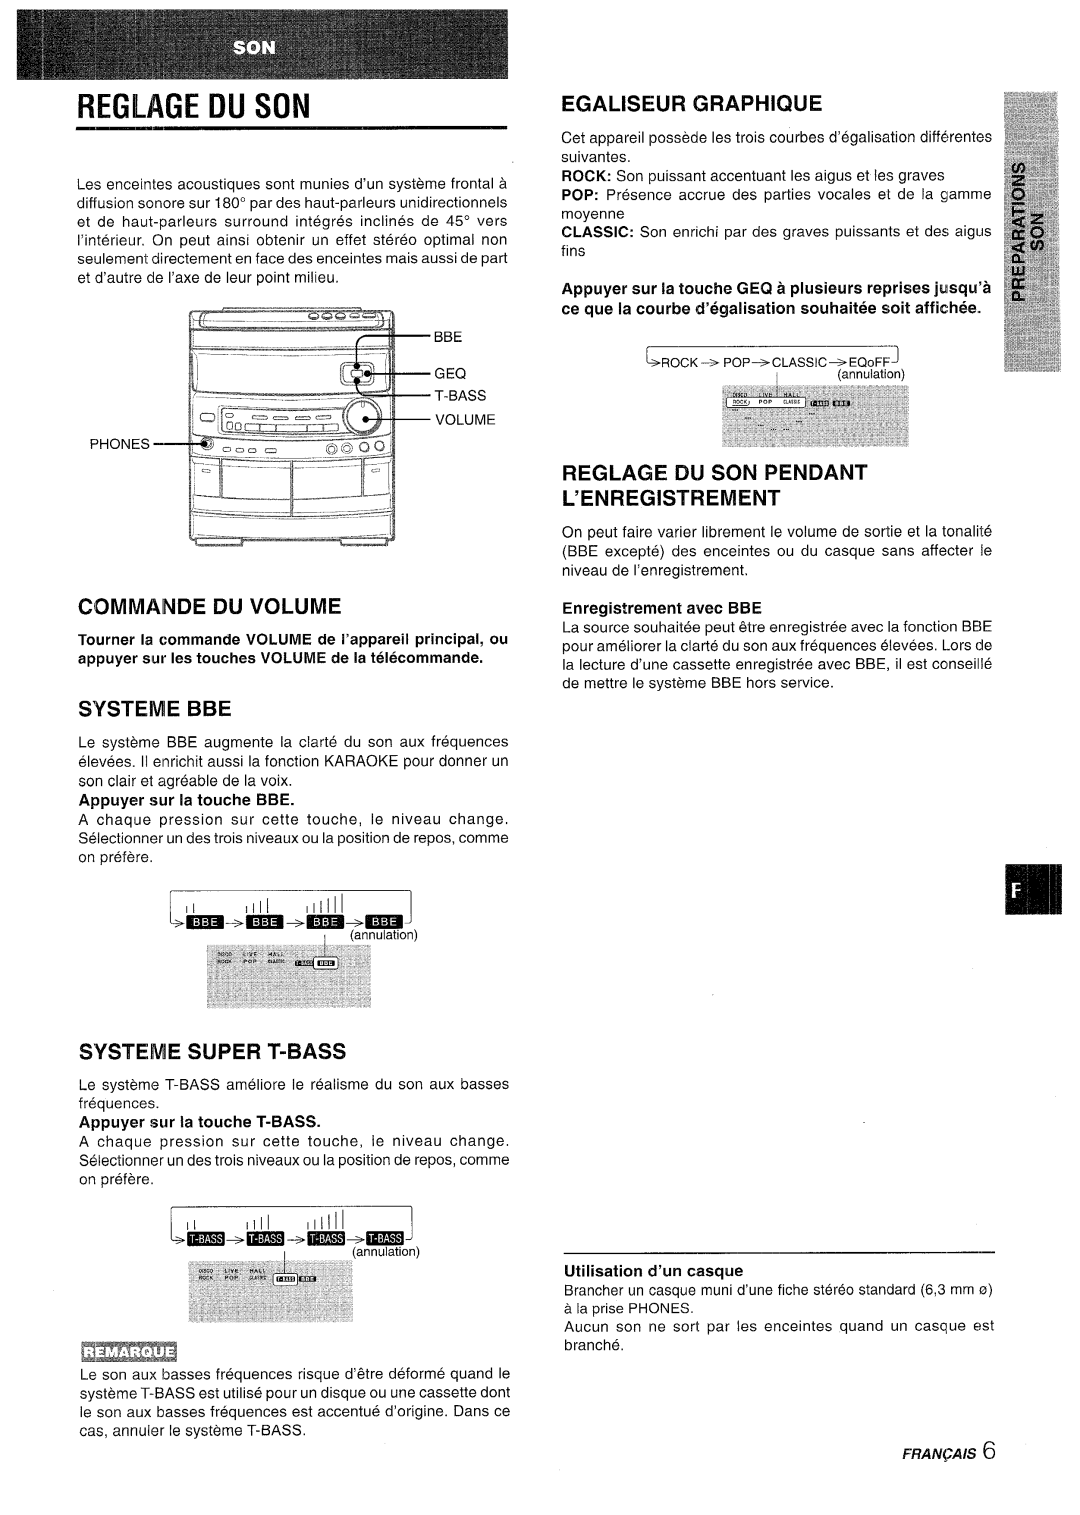 Aiwa CX-NV8000 manual Reglage Dij Son, Commainde Du Volume, Systeme Bbe, Egaliseur Graphique, Appuyer sur la touche BBE 